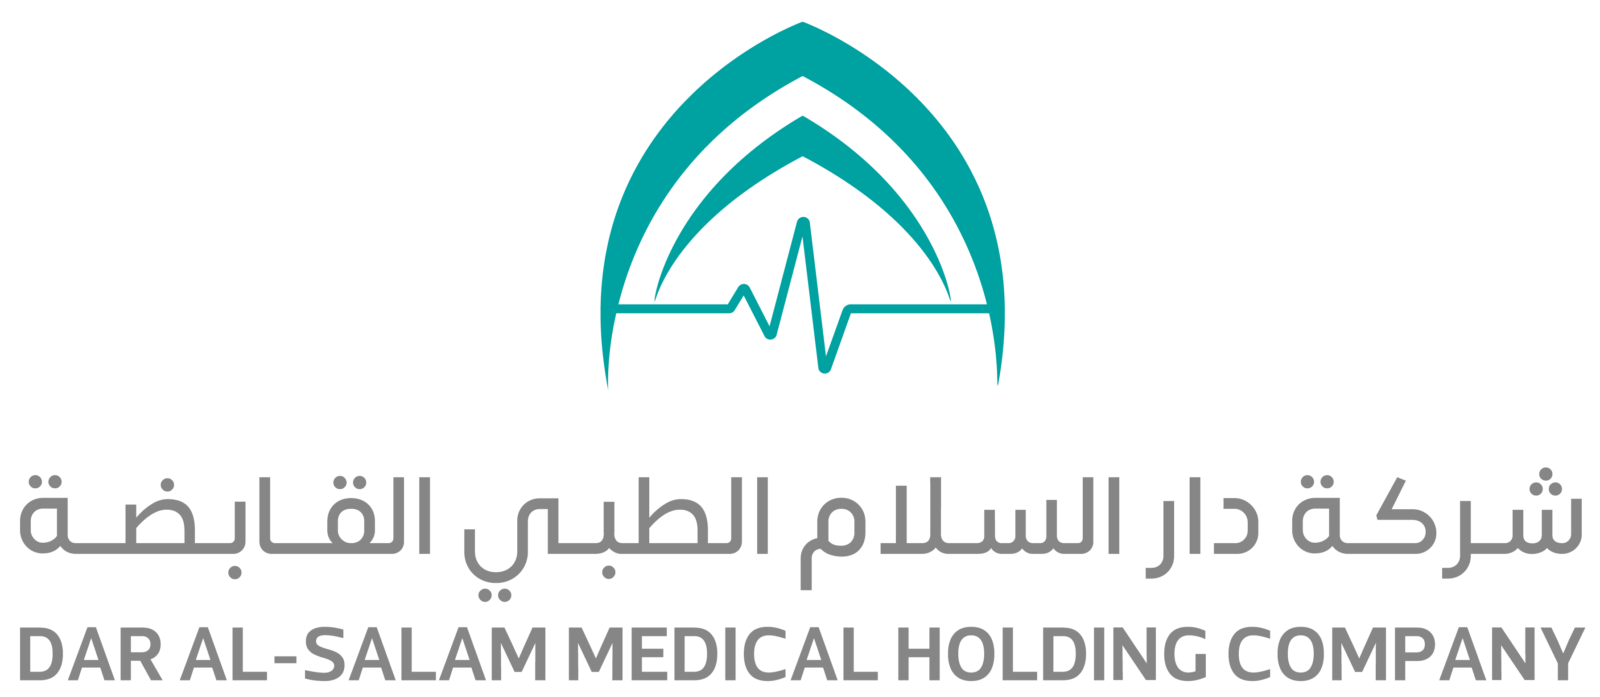 شركة دار السلام الطبية للعمل بالمدينة المنورة في السعودية - وظائف شركة دار السلام الطبية للعمل بالمدينة المنورة في السعودية